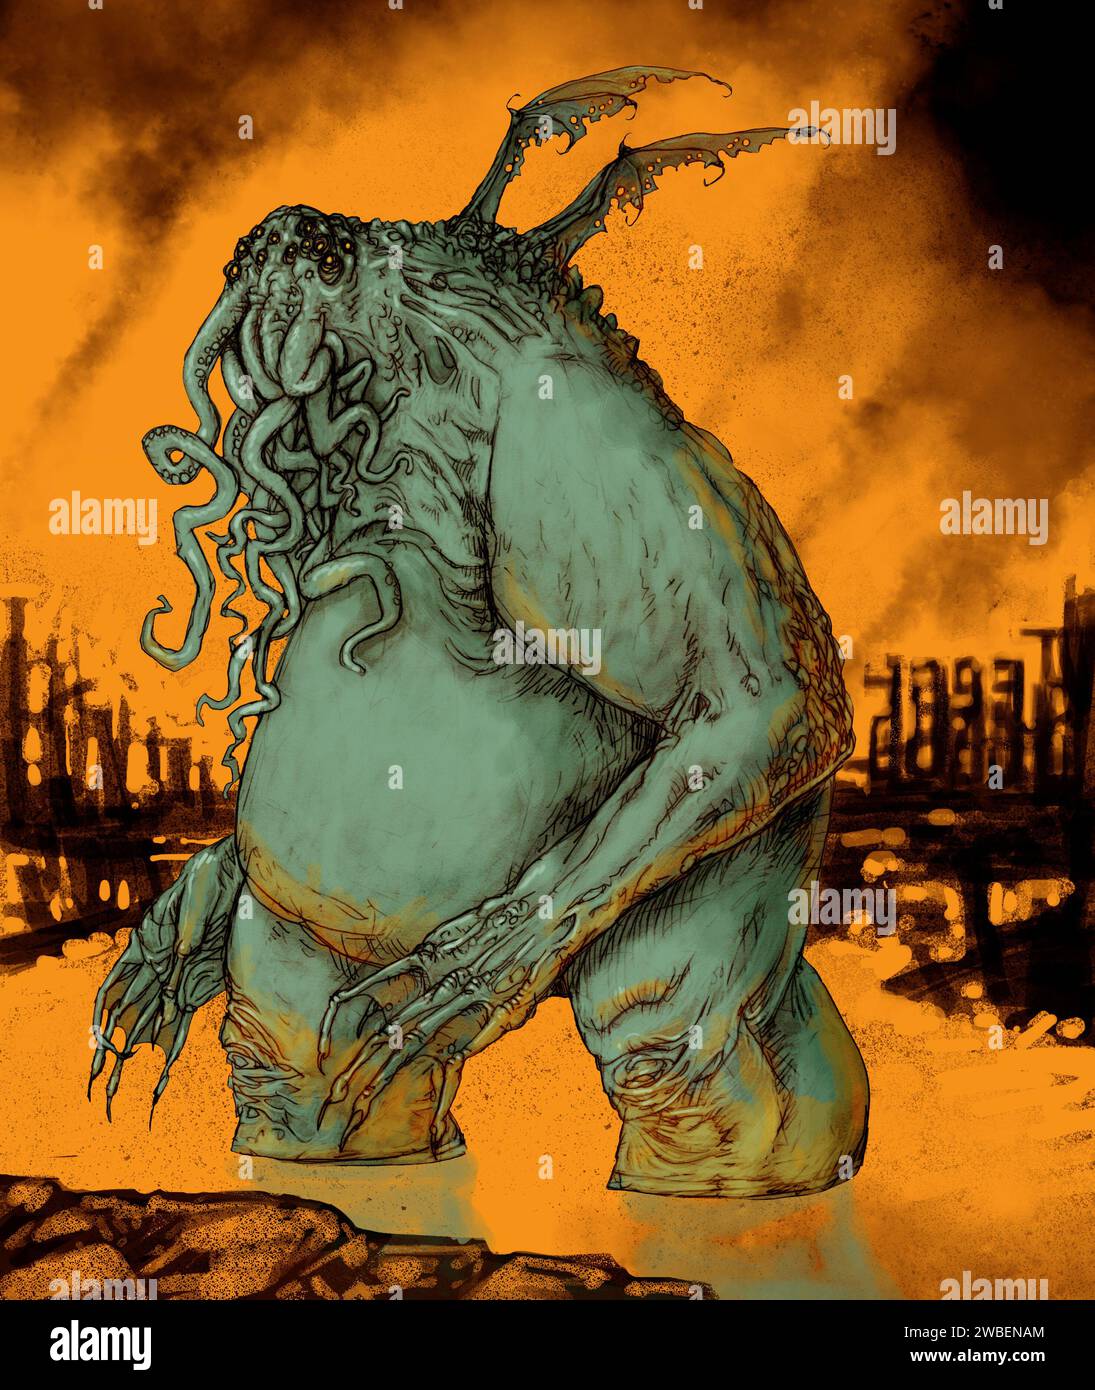 L'art de l'horreur illustrant, Cthulhu, une entité cosmique fictive créée par H. P. Lovecraft dans son histoire l'appel de Cthulhu. Considéré comme un grand vieux. Banque D'Images